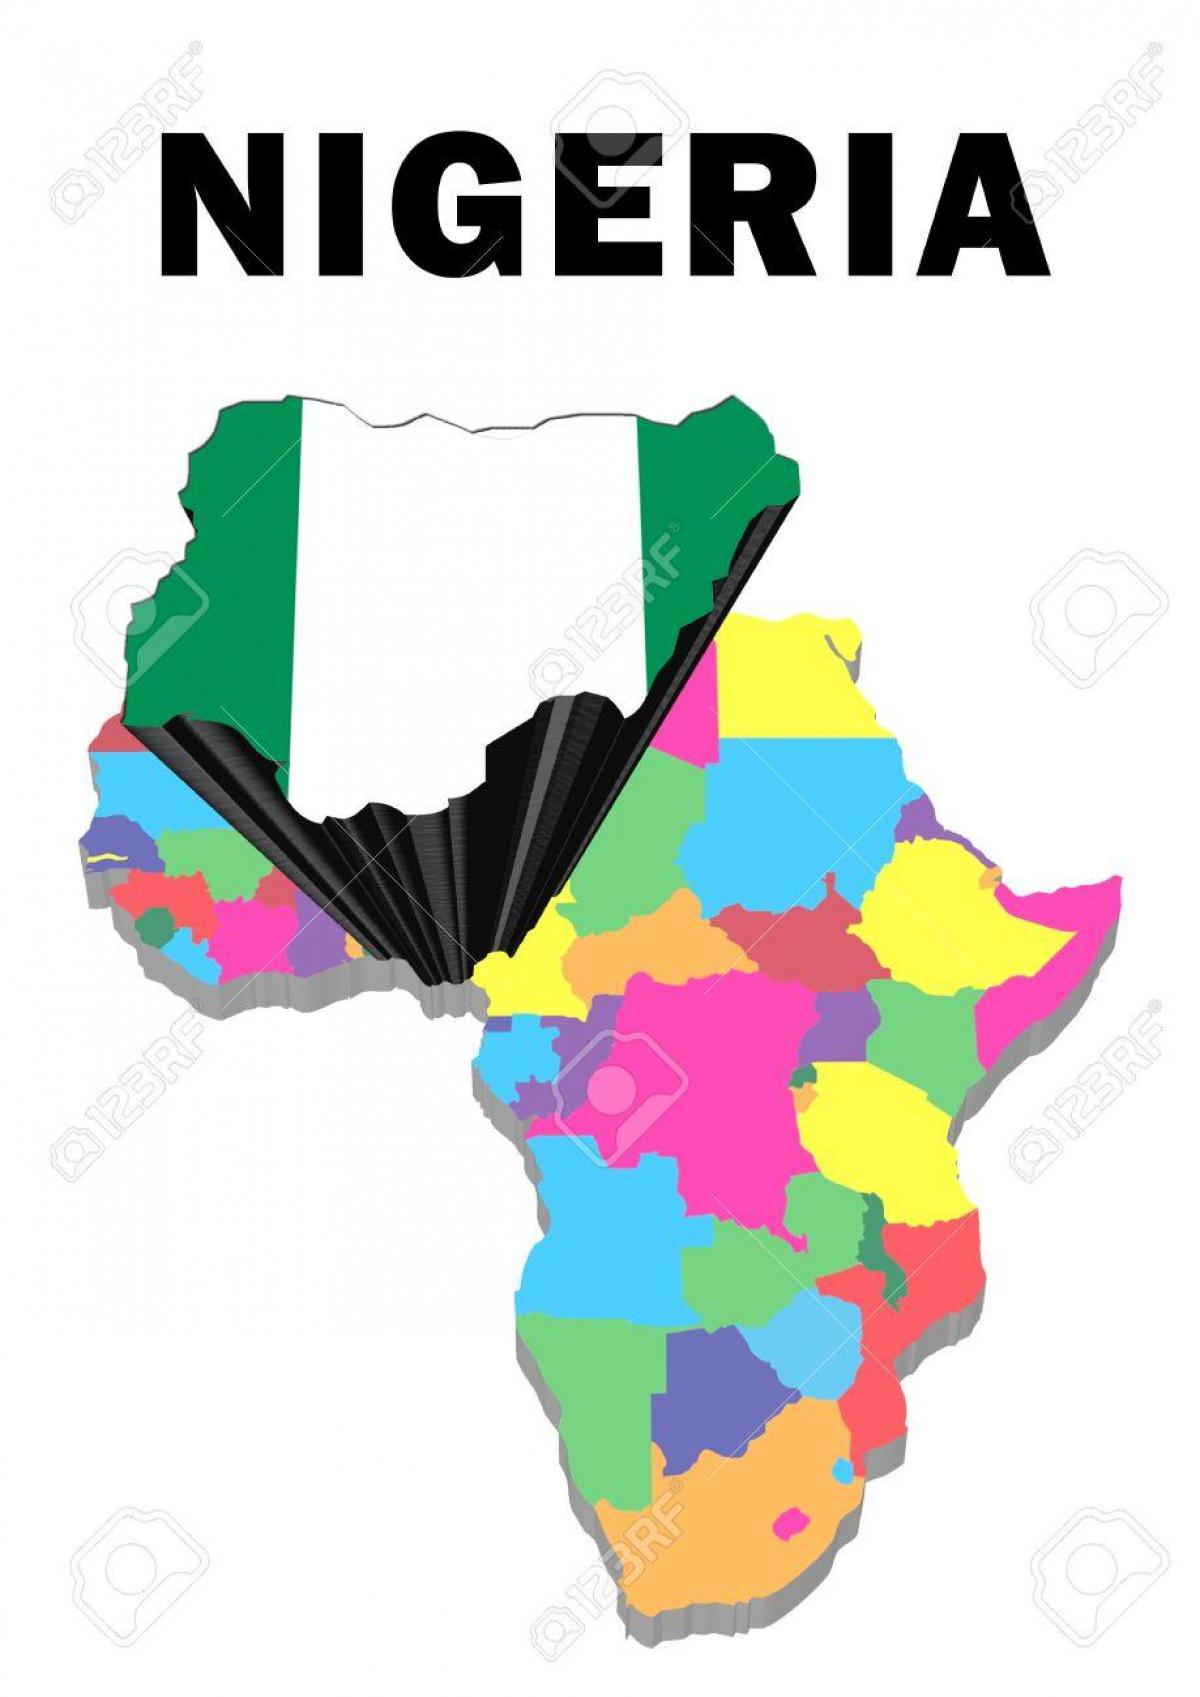 خريطة أفريقيا مع نيجيريا أبرز